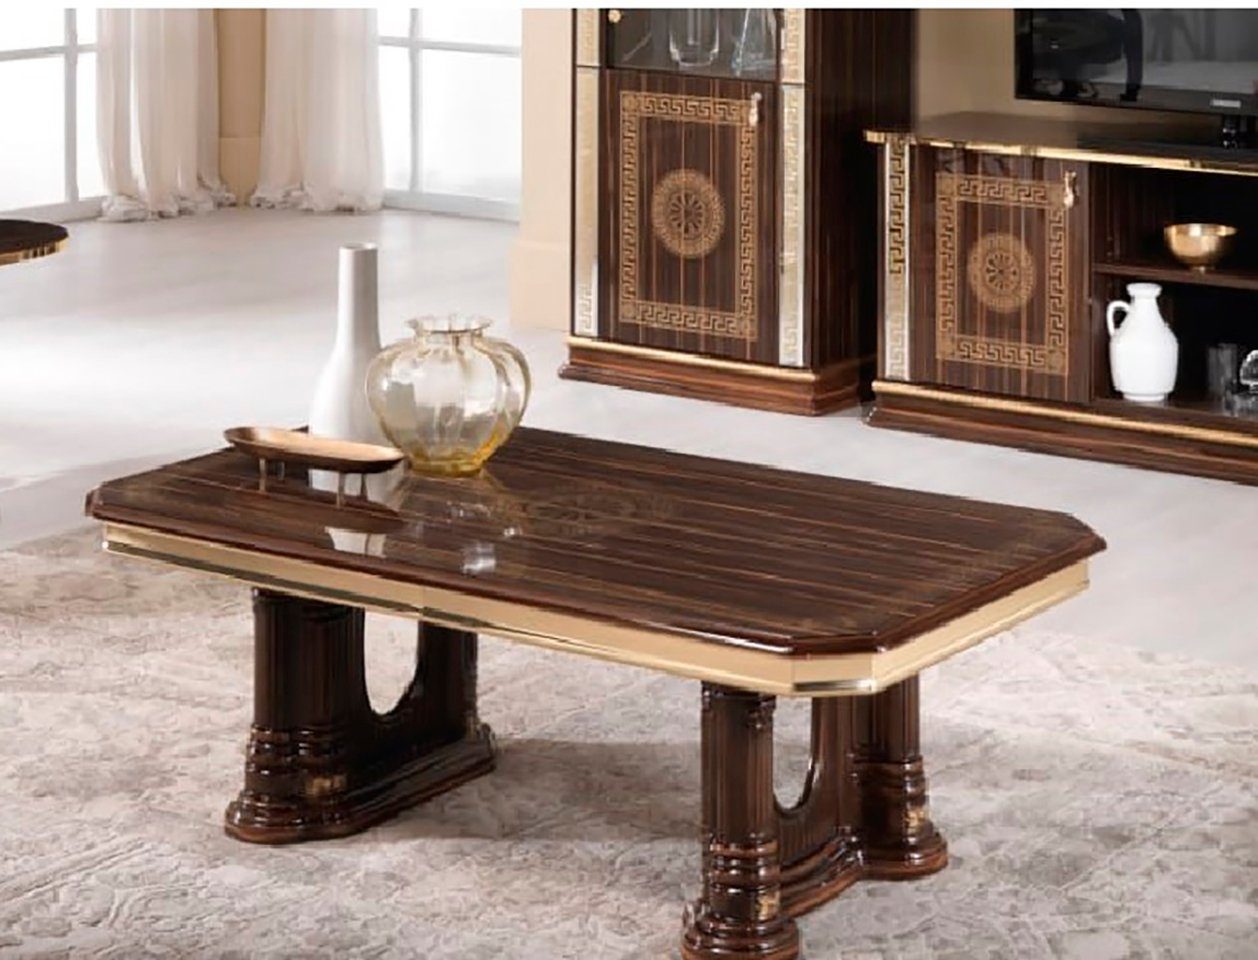 JVmoebel Couchtisch, Möbel Tisch Luxus Couchtisch Design Luxus Tische Kaffeetisch Tische Wohnzimmer